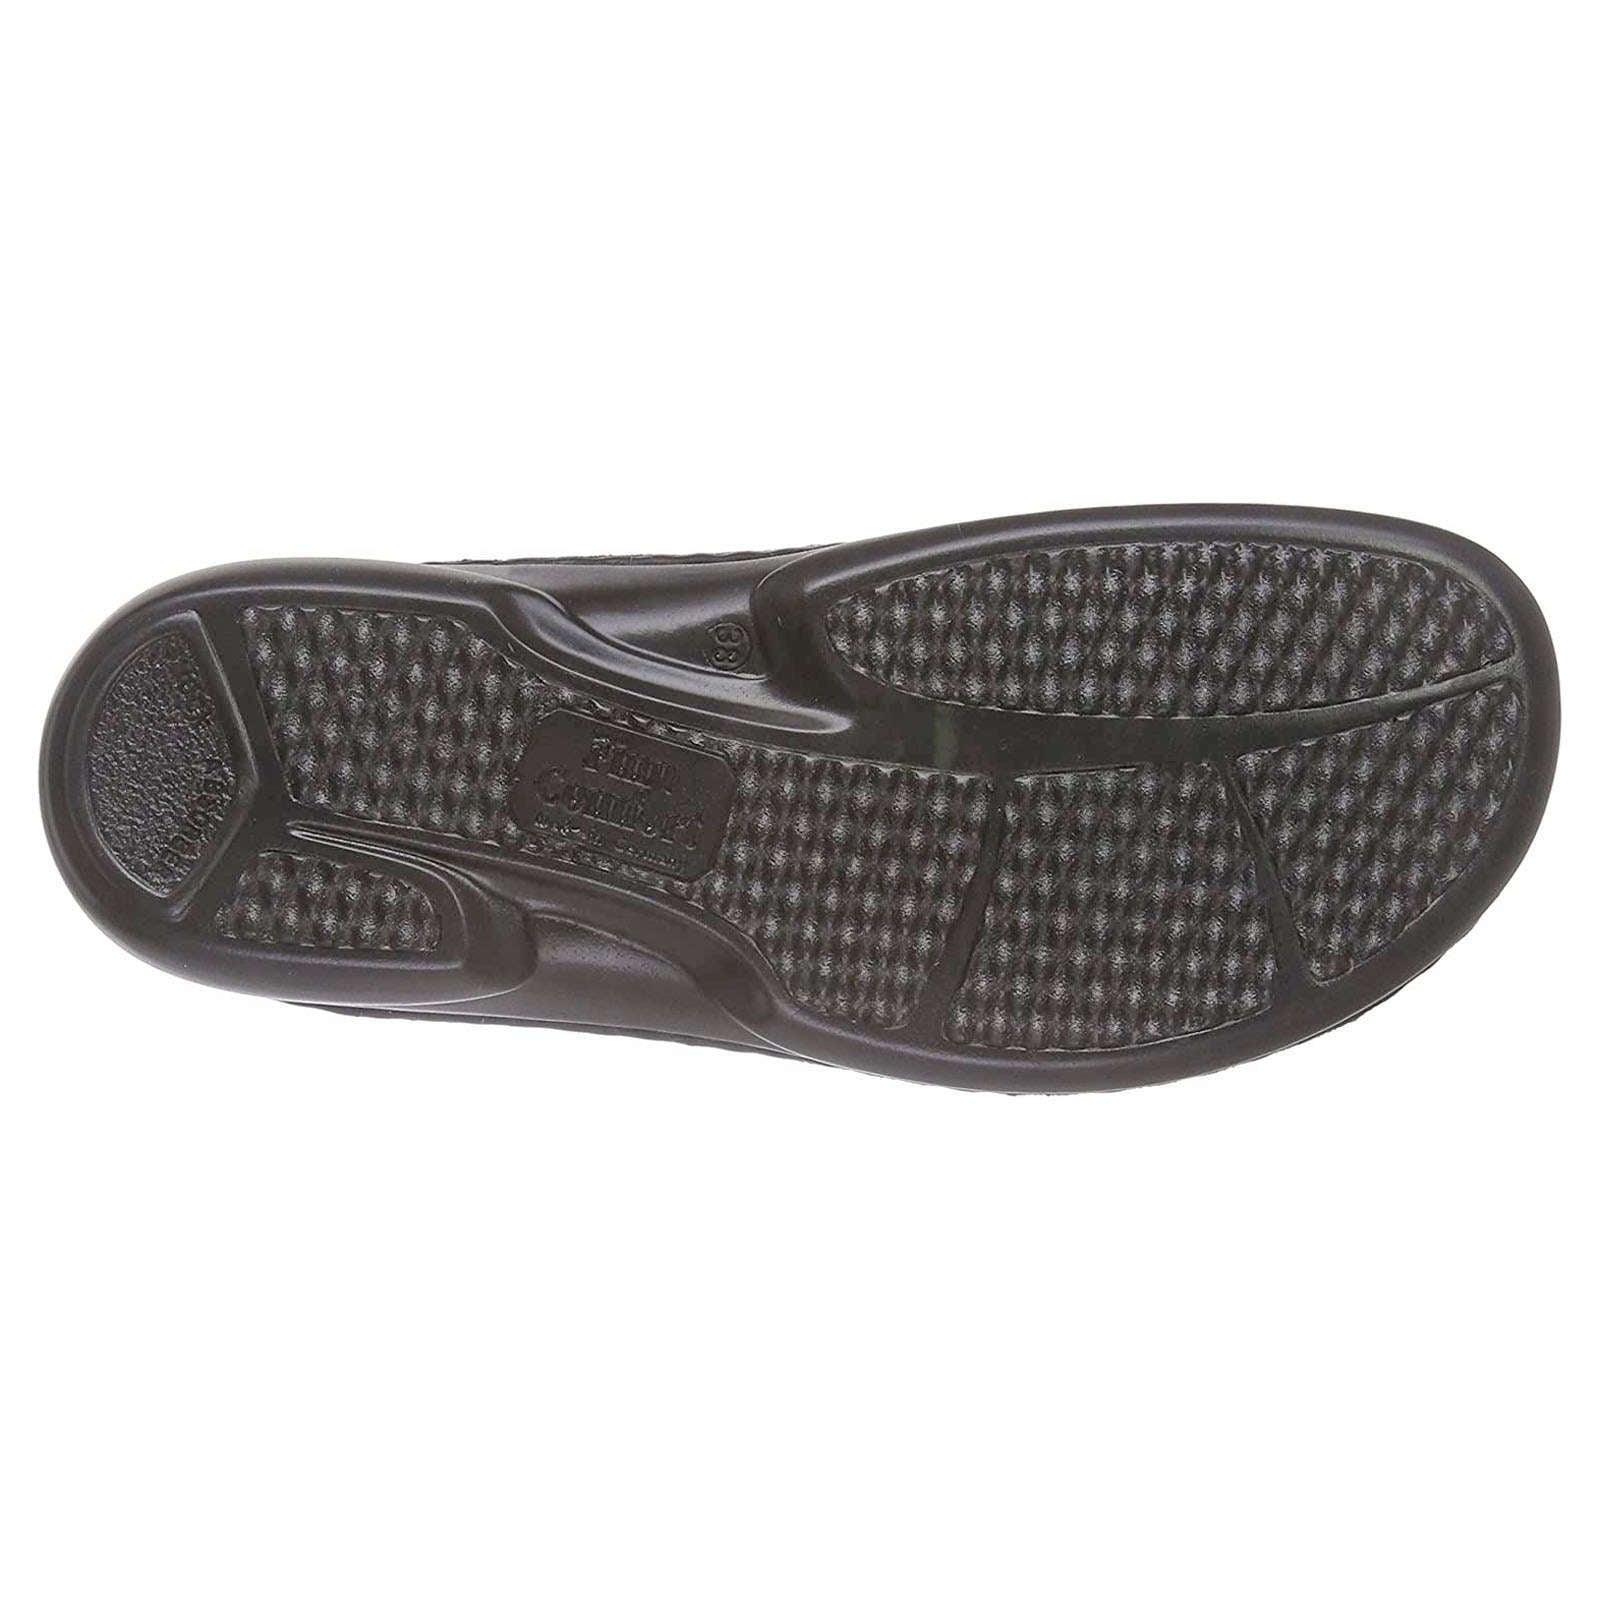 Finn Comfort Kos Leather Women's Slip-On Sandals#color_black jasmin